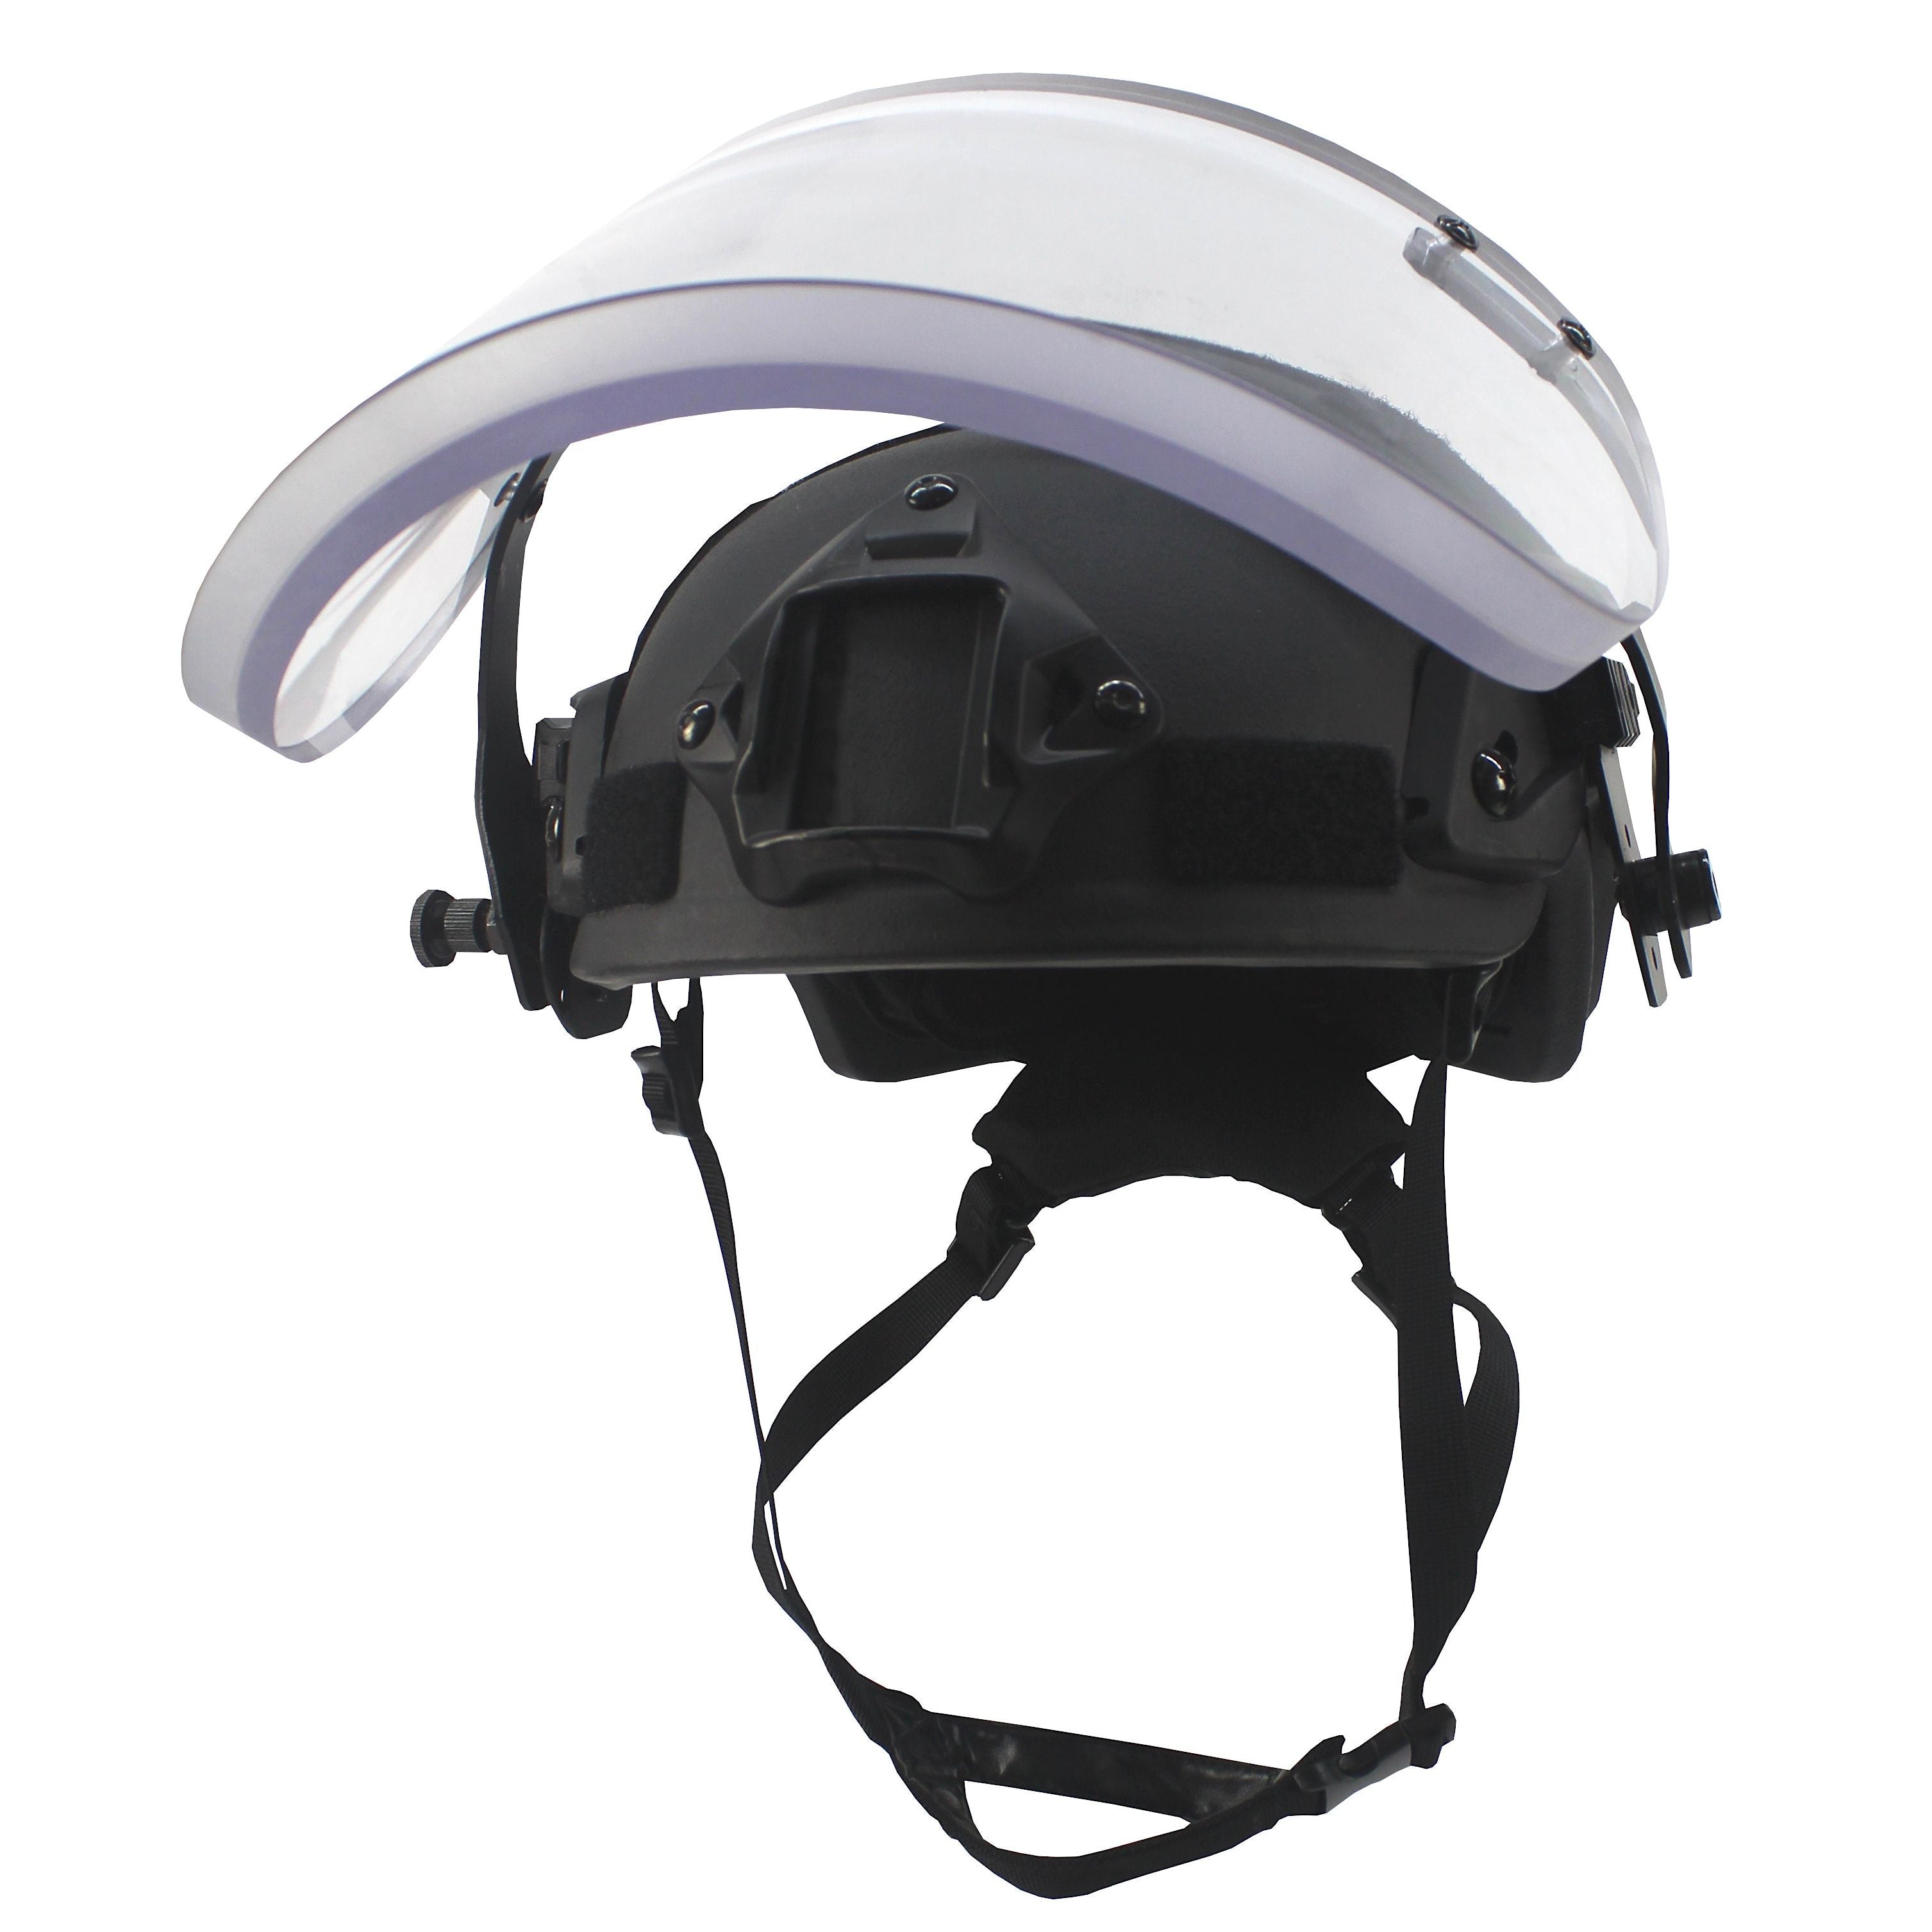 CEST® Ballistic visor for combat helmets